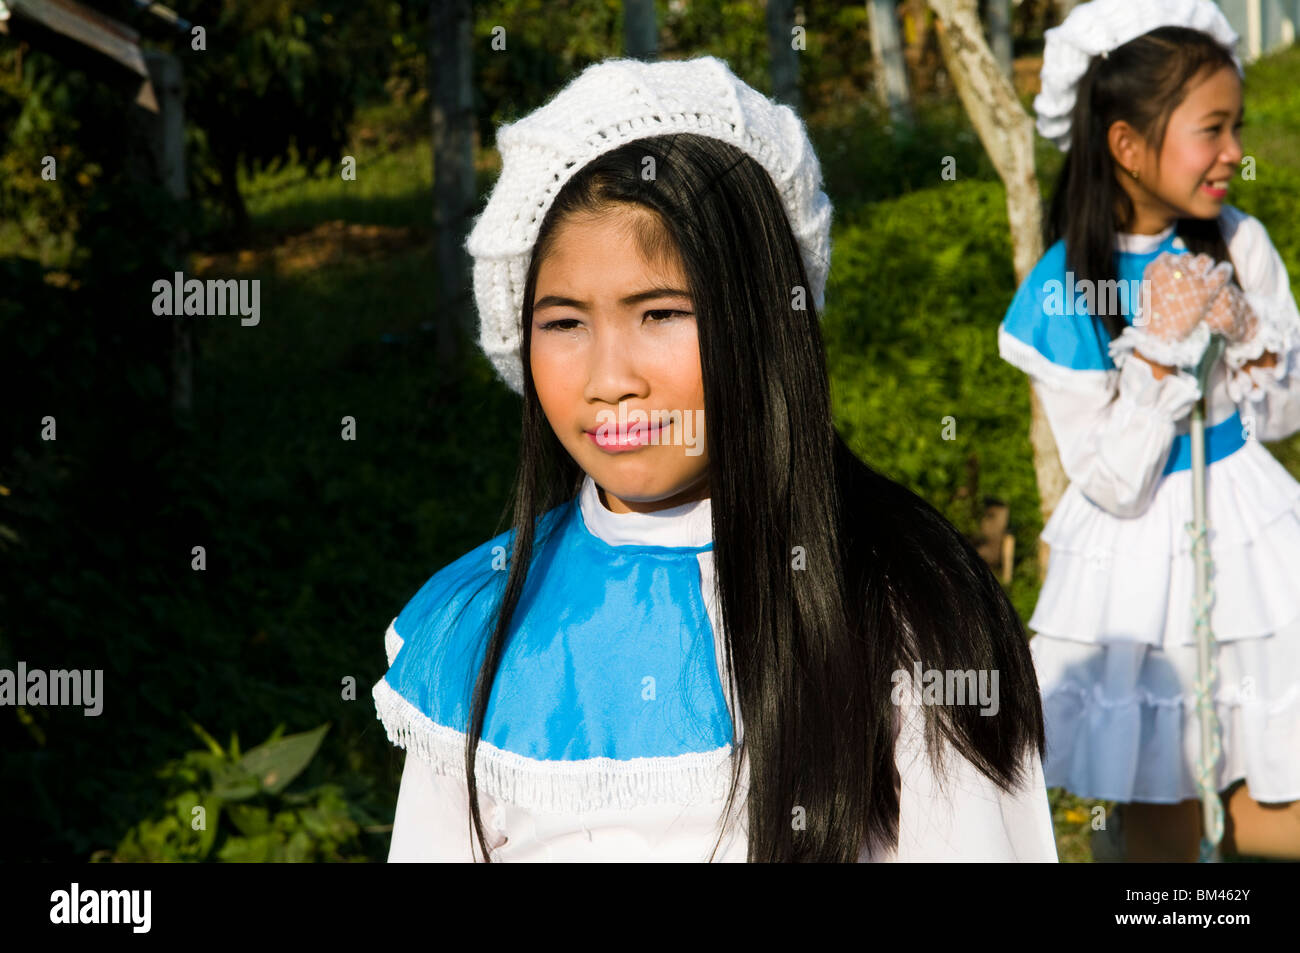 Portraits de jeunes filles Thai prise lors d'une procession colorée dans le Nord de la Thaïlande. Banque D'Images